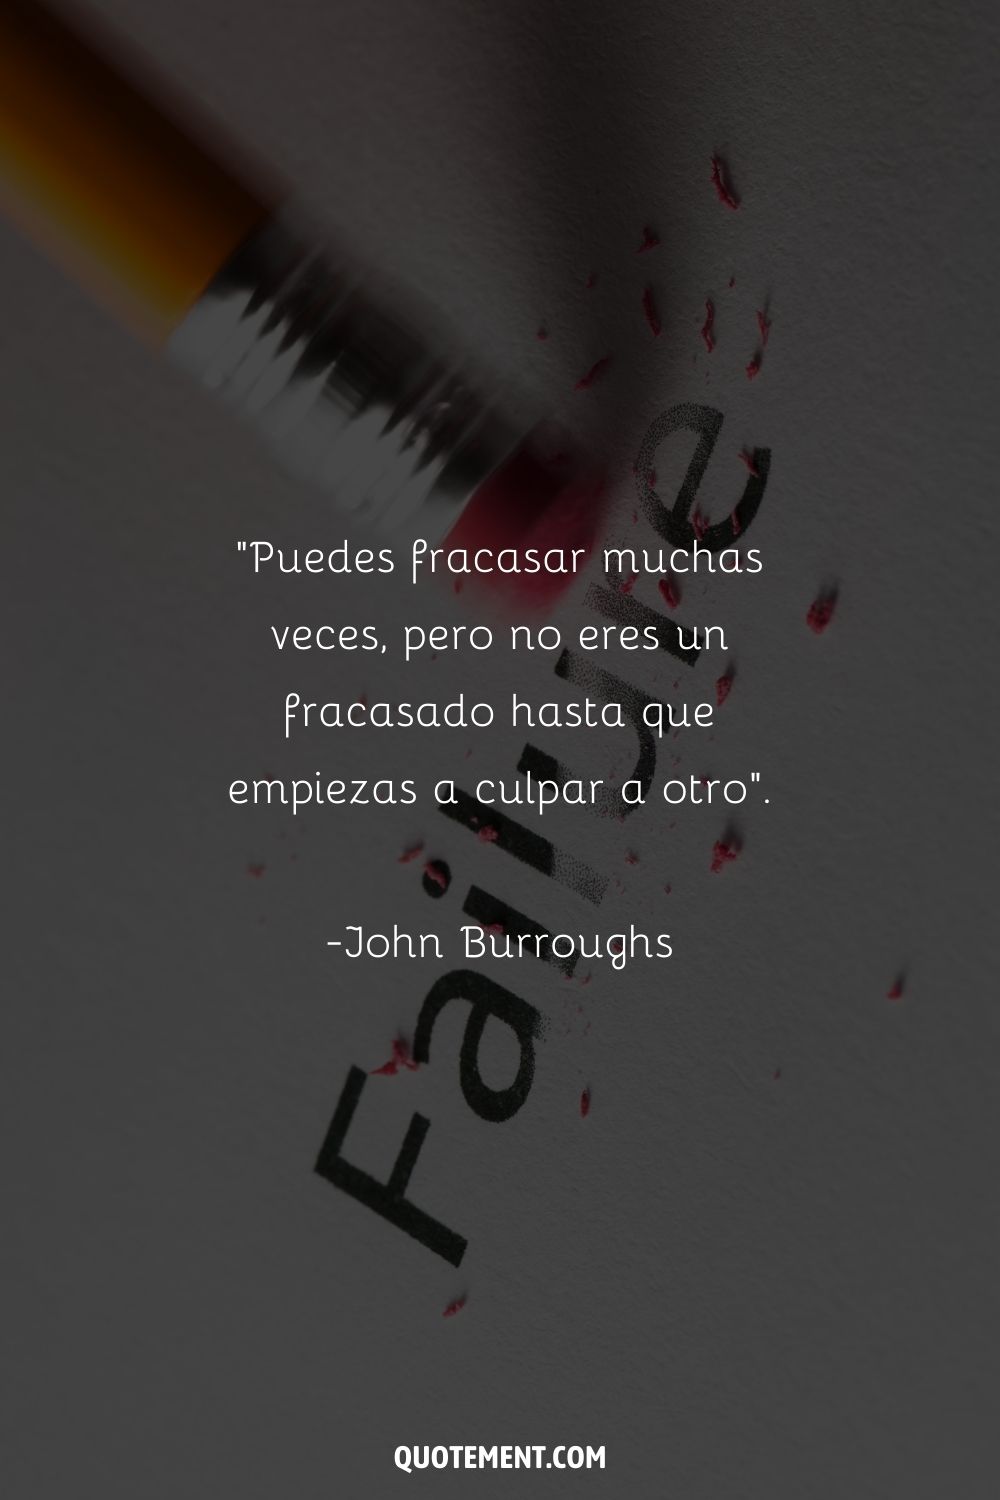 "Puedes fracasar muchas veces, pero no eres un fracasado hasta que empiezas a culpar a otro". - John Burroughs